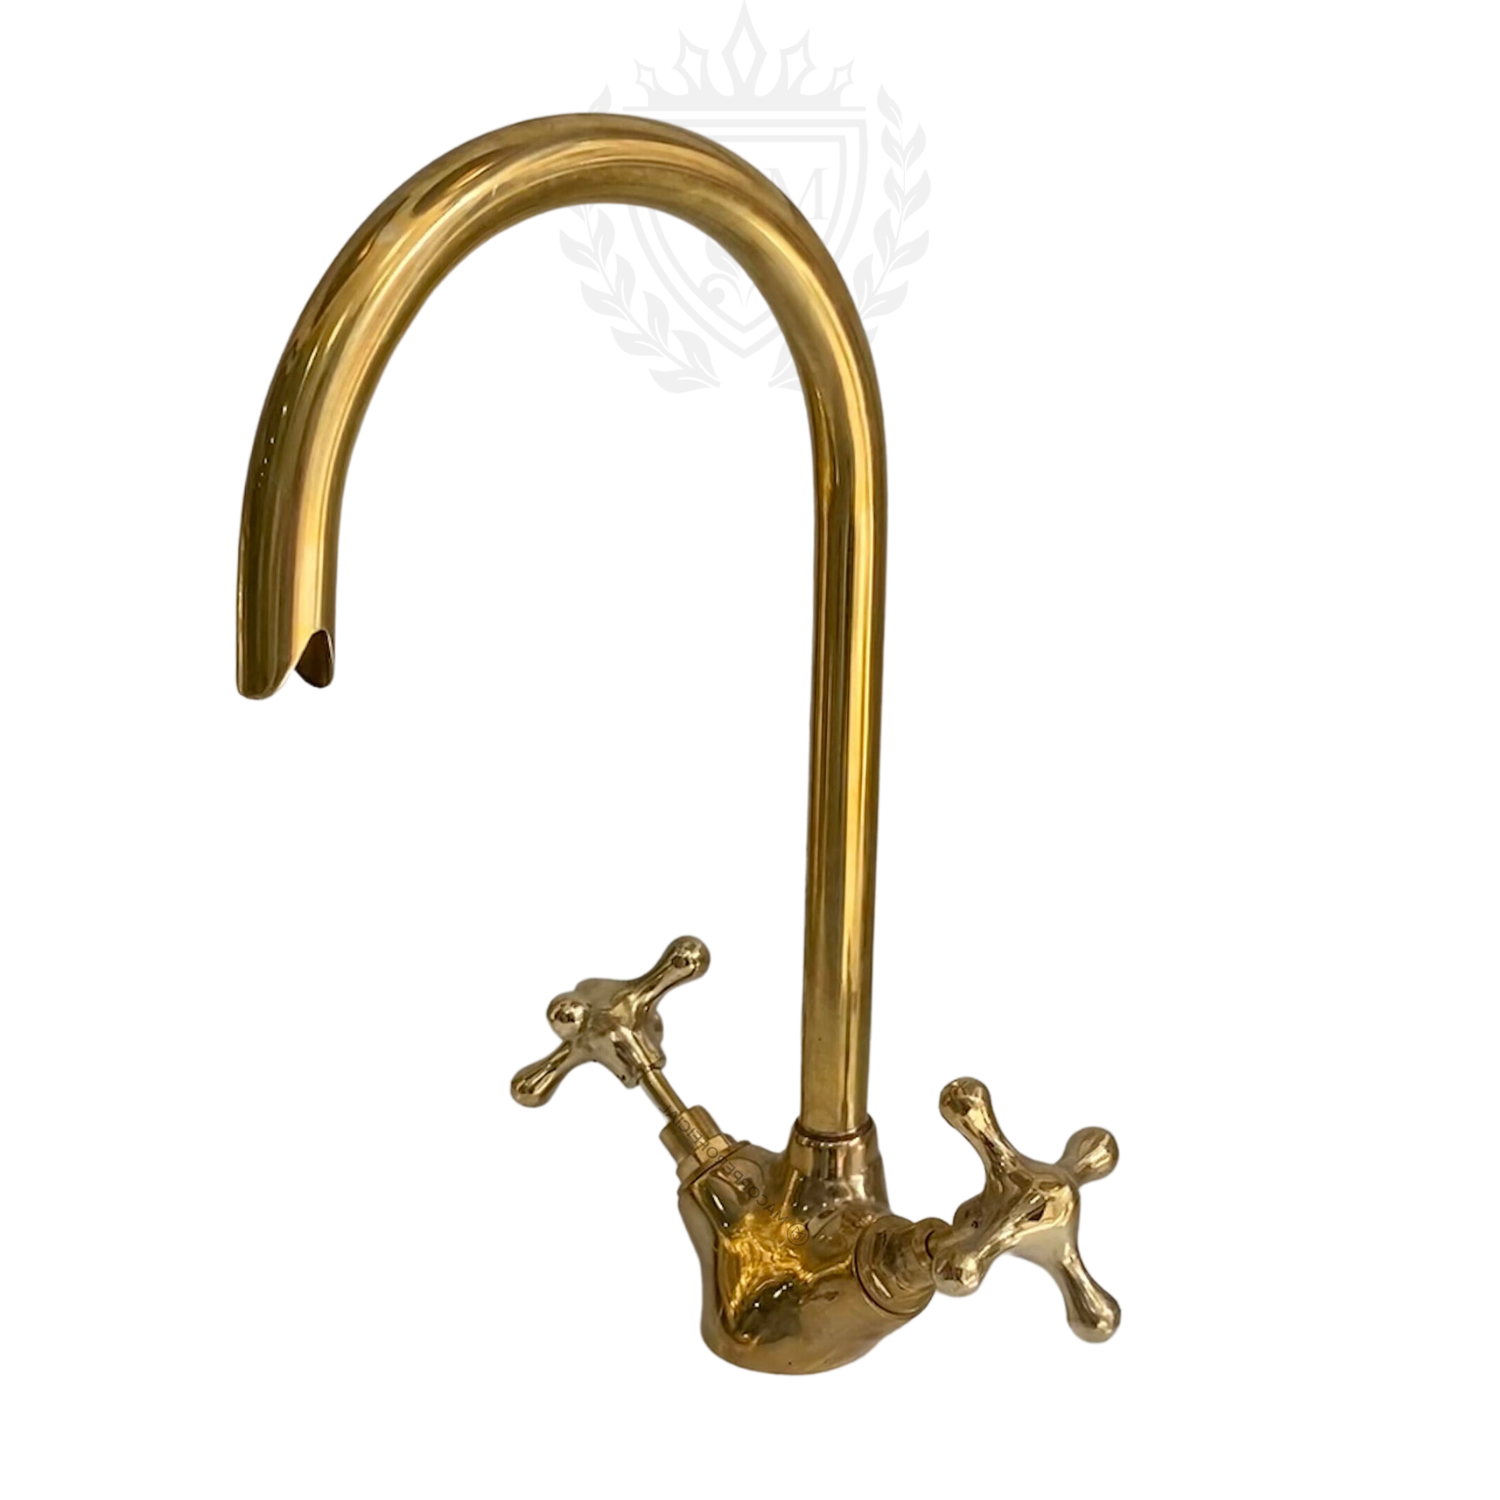 Antique Brass Bathroom Faucet, Cross Handle Brass Kitchen Vanity Faucet